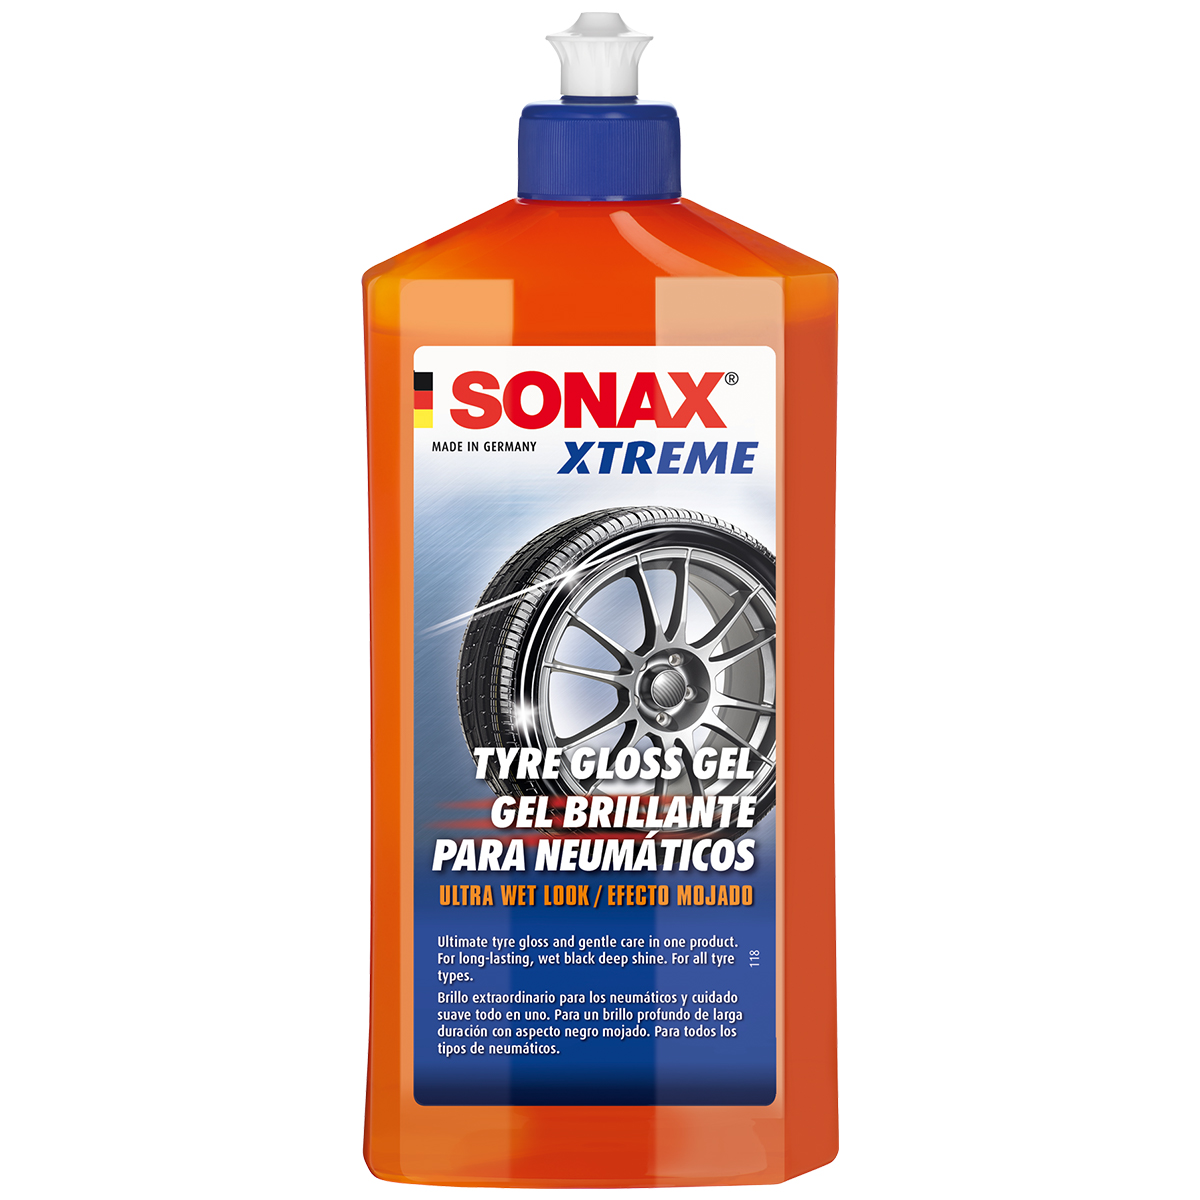 Gel dưỡng lốp và tạo độ bóng lốp xe Tyre Gloss Gel Xtreme Sonax 235241 500ml tặng kèm 1 khăn 3M KL3030 - Bảo vệ lốp xe, chống nứt bạc màu, tác dụng kéo dài, dạng gel tiên tiến thế hệ mới